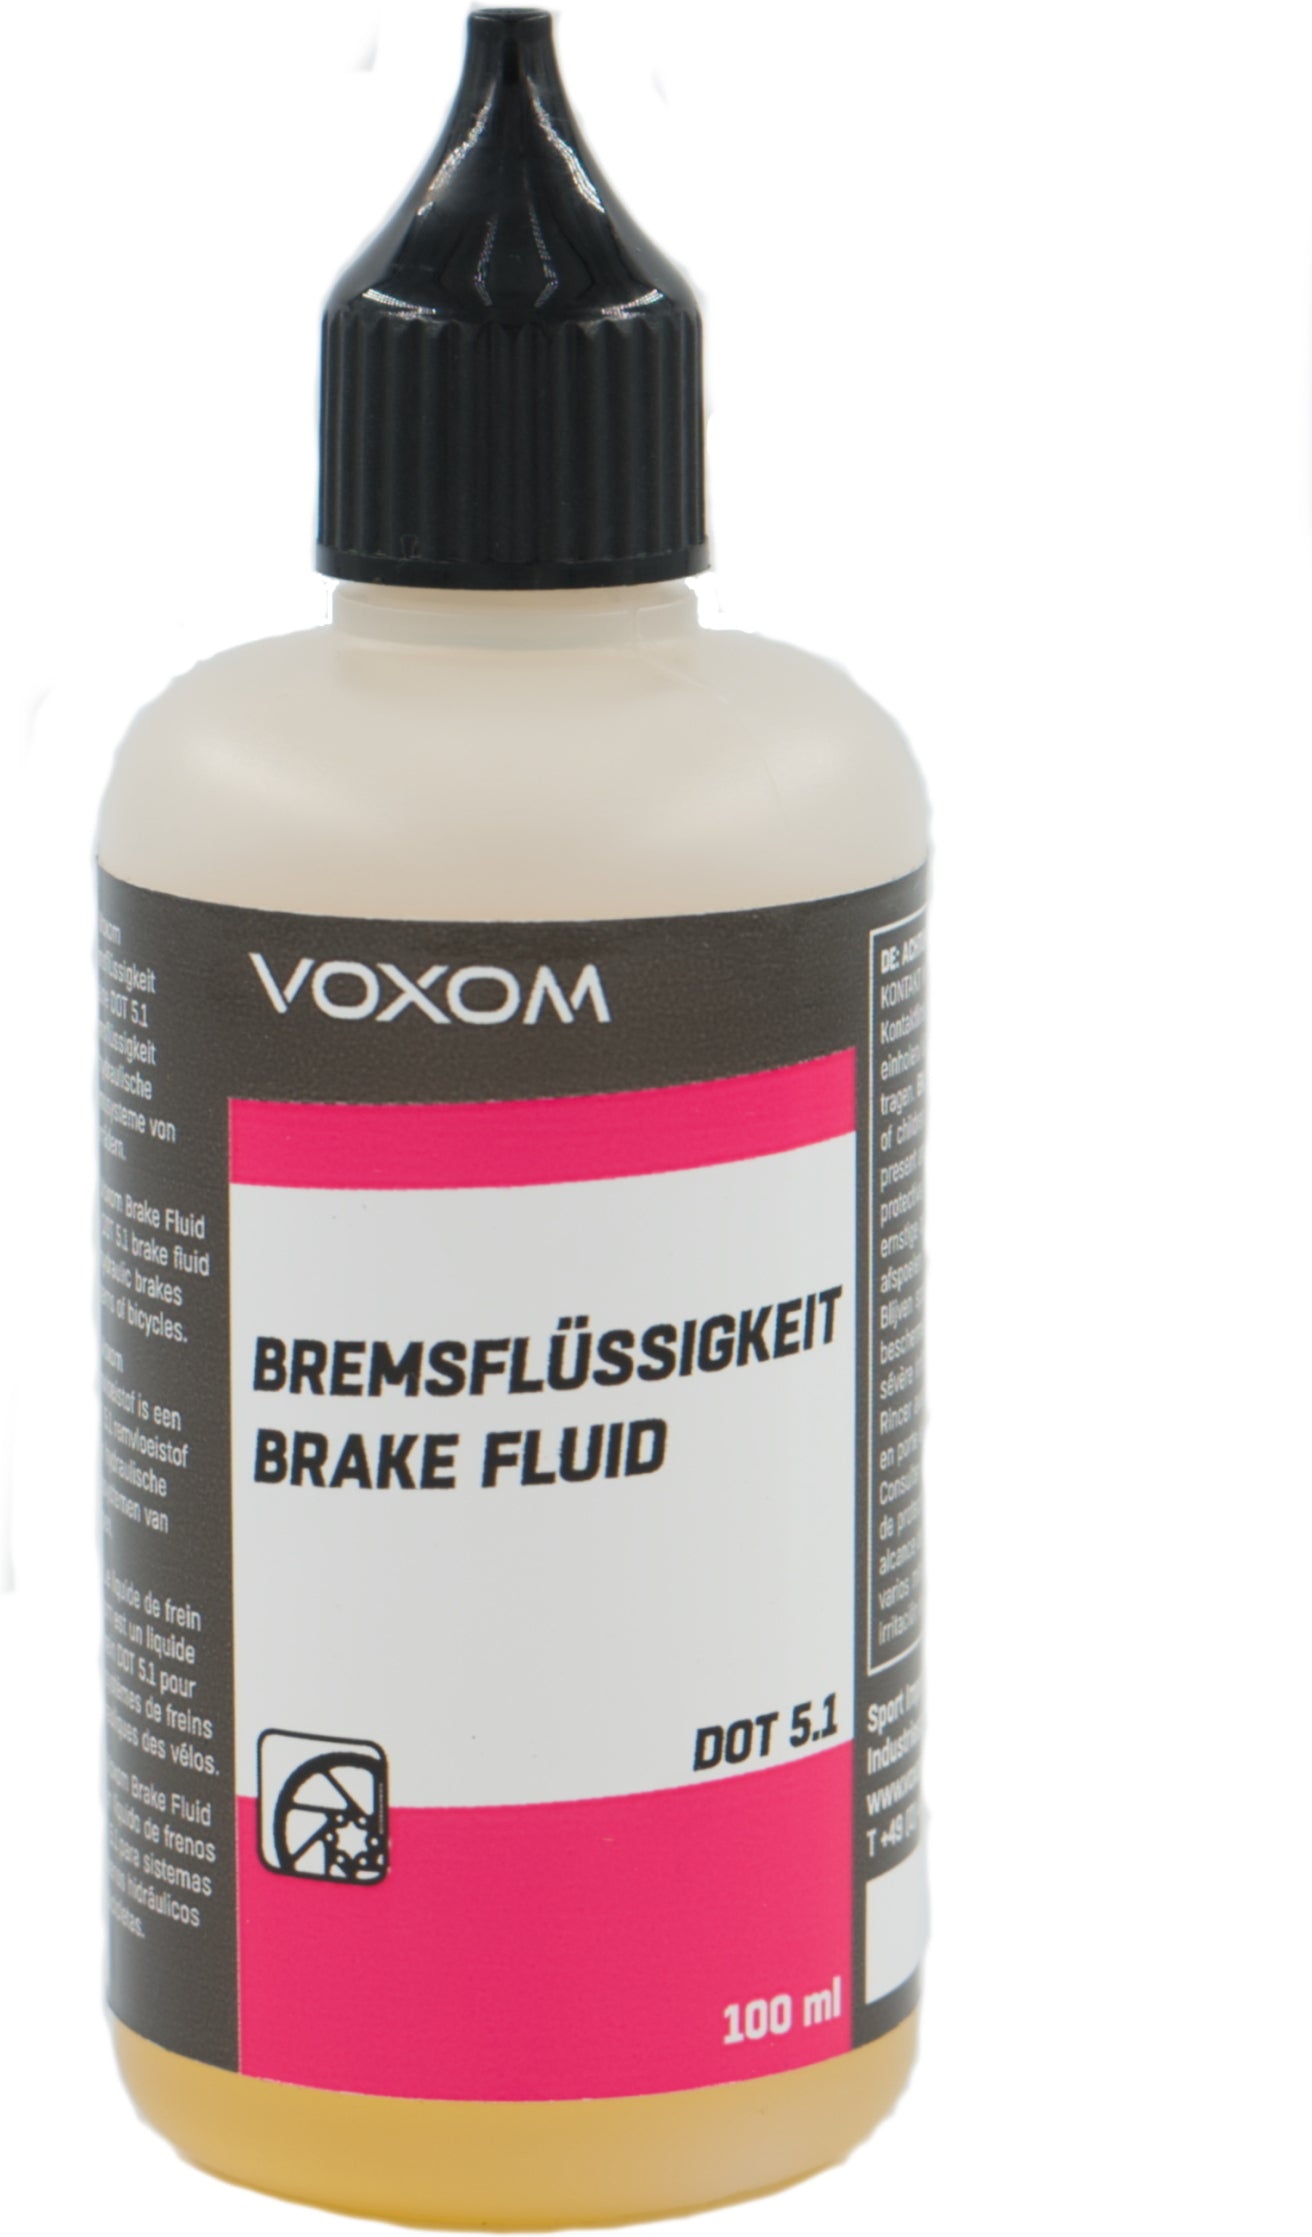 Voxom hydraulische Bremsflüssigkeit 100ml - DOT 5.1